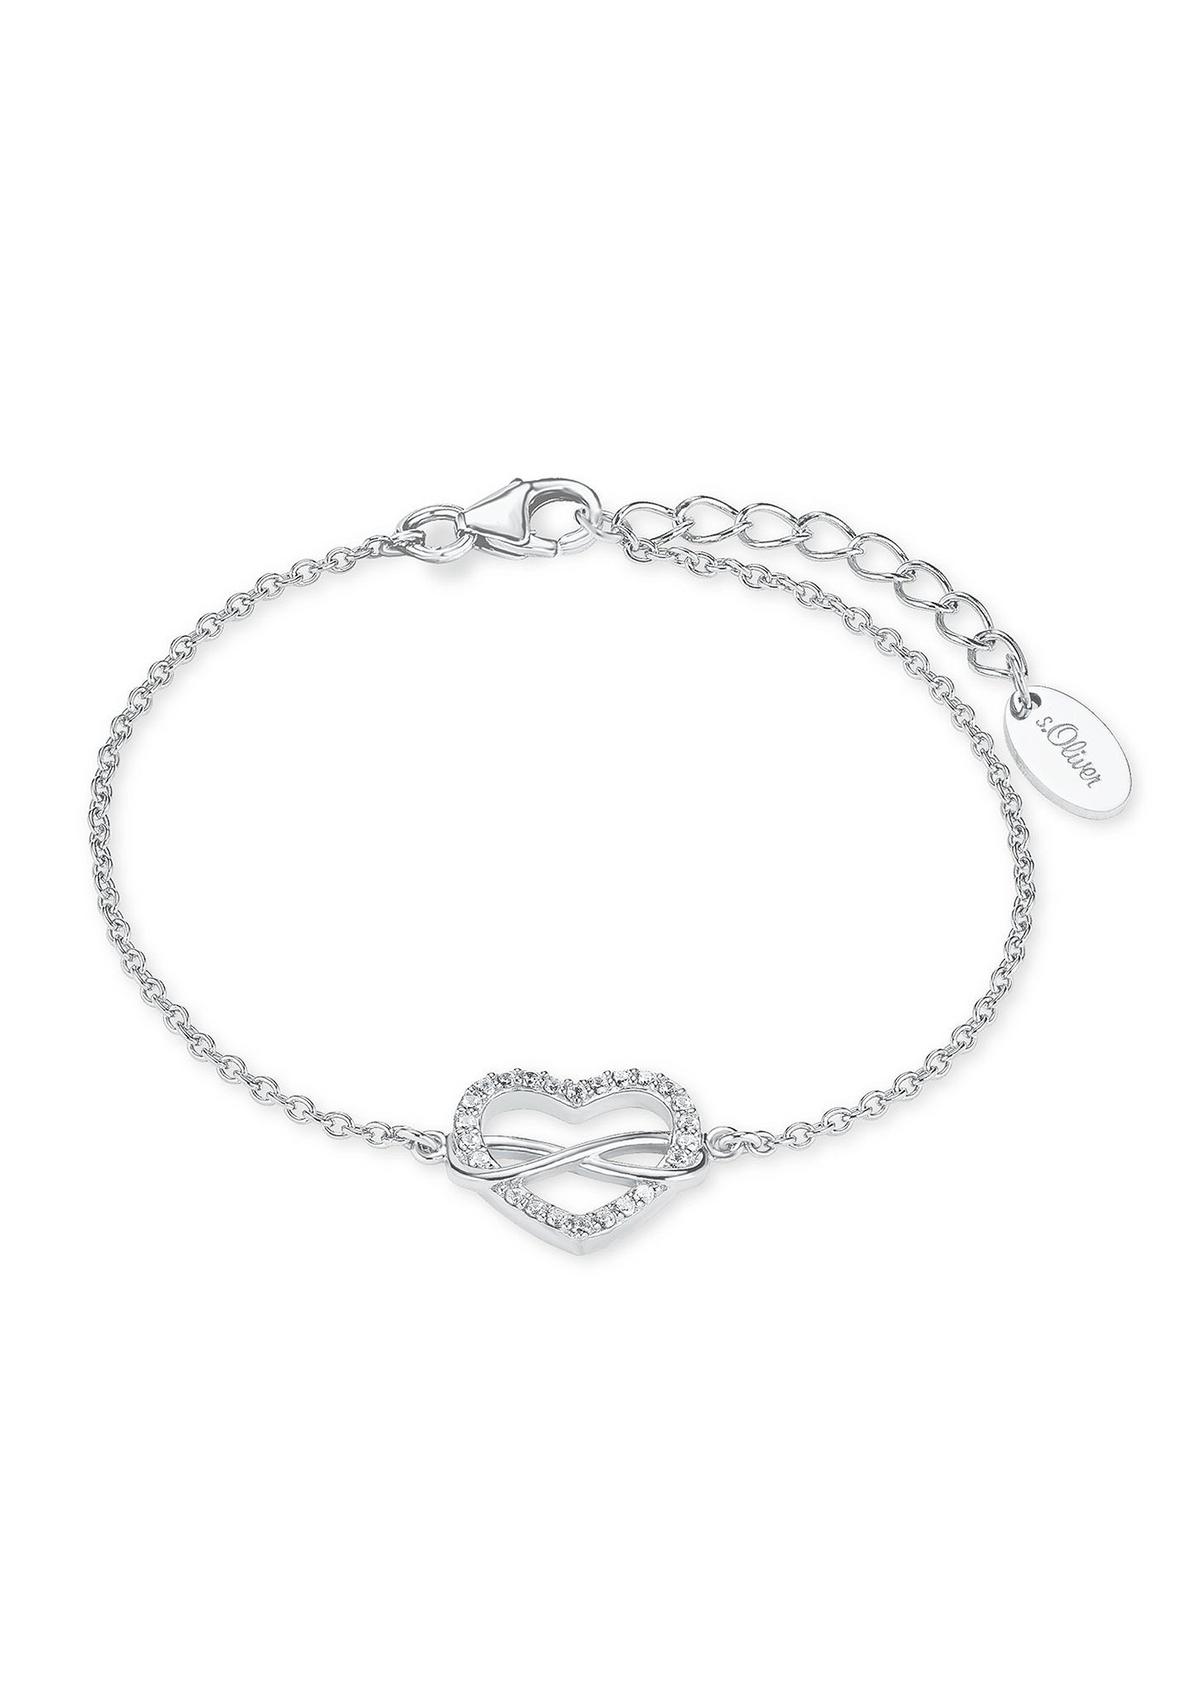 Silber-Armband Herz/Infinity - roségold